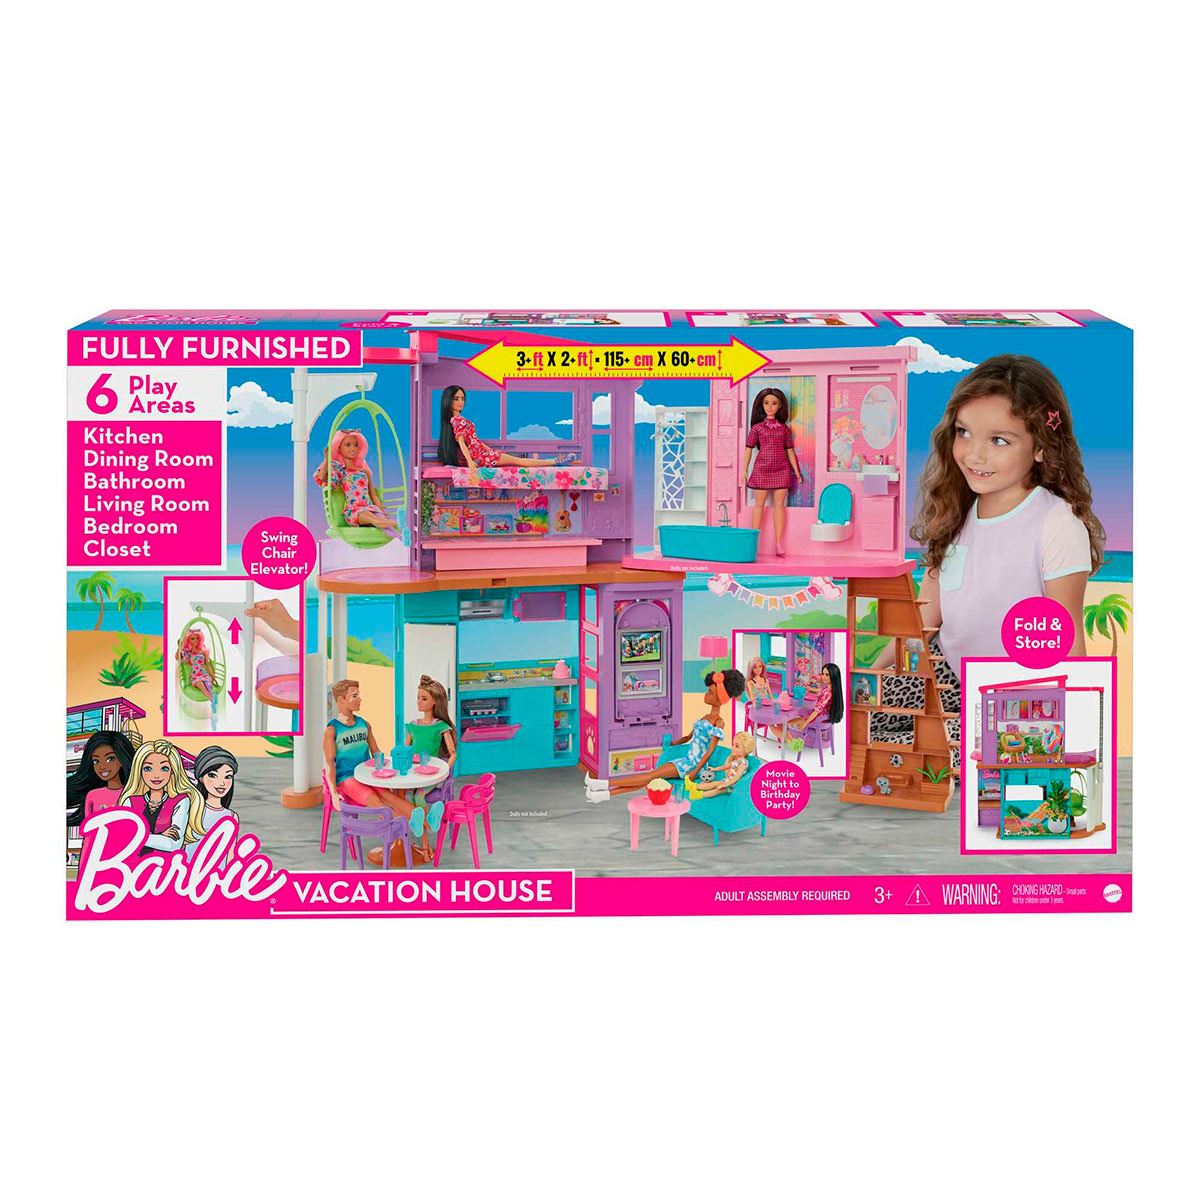 Barbie Casa de Muñecas Malibu